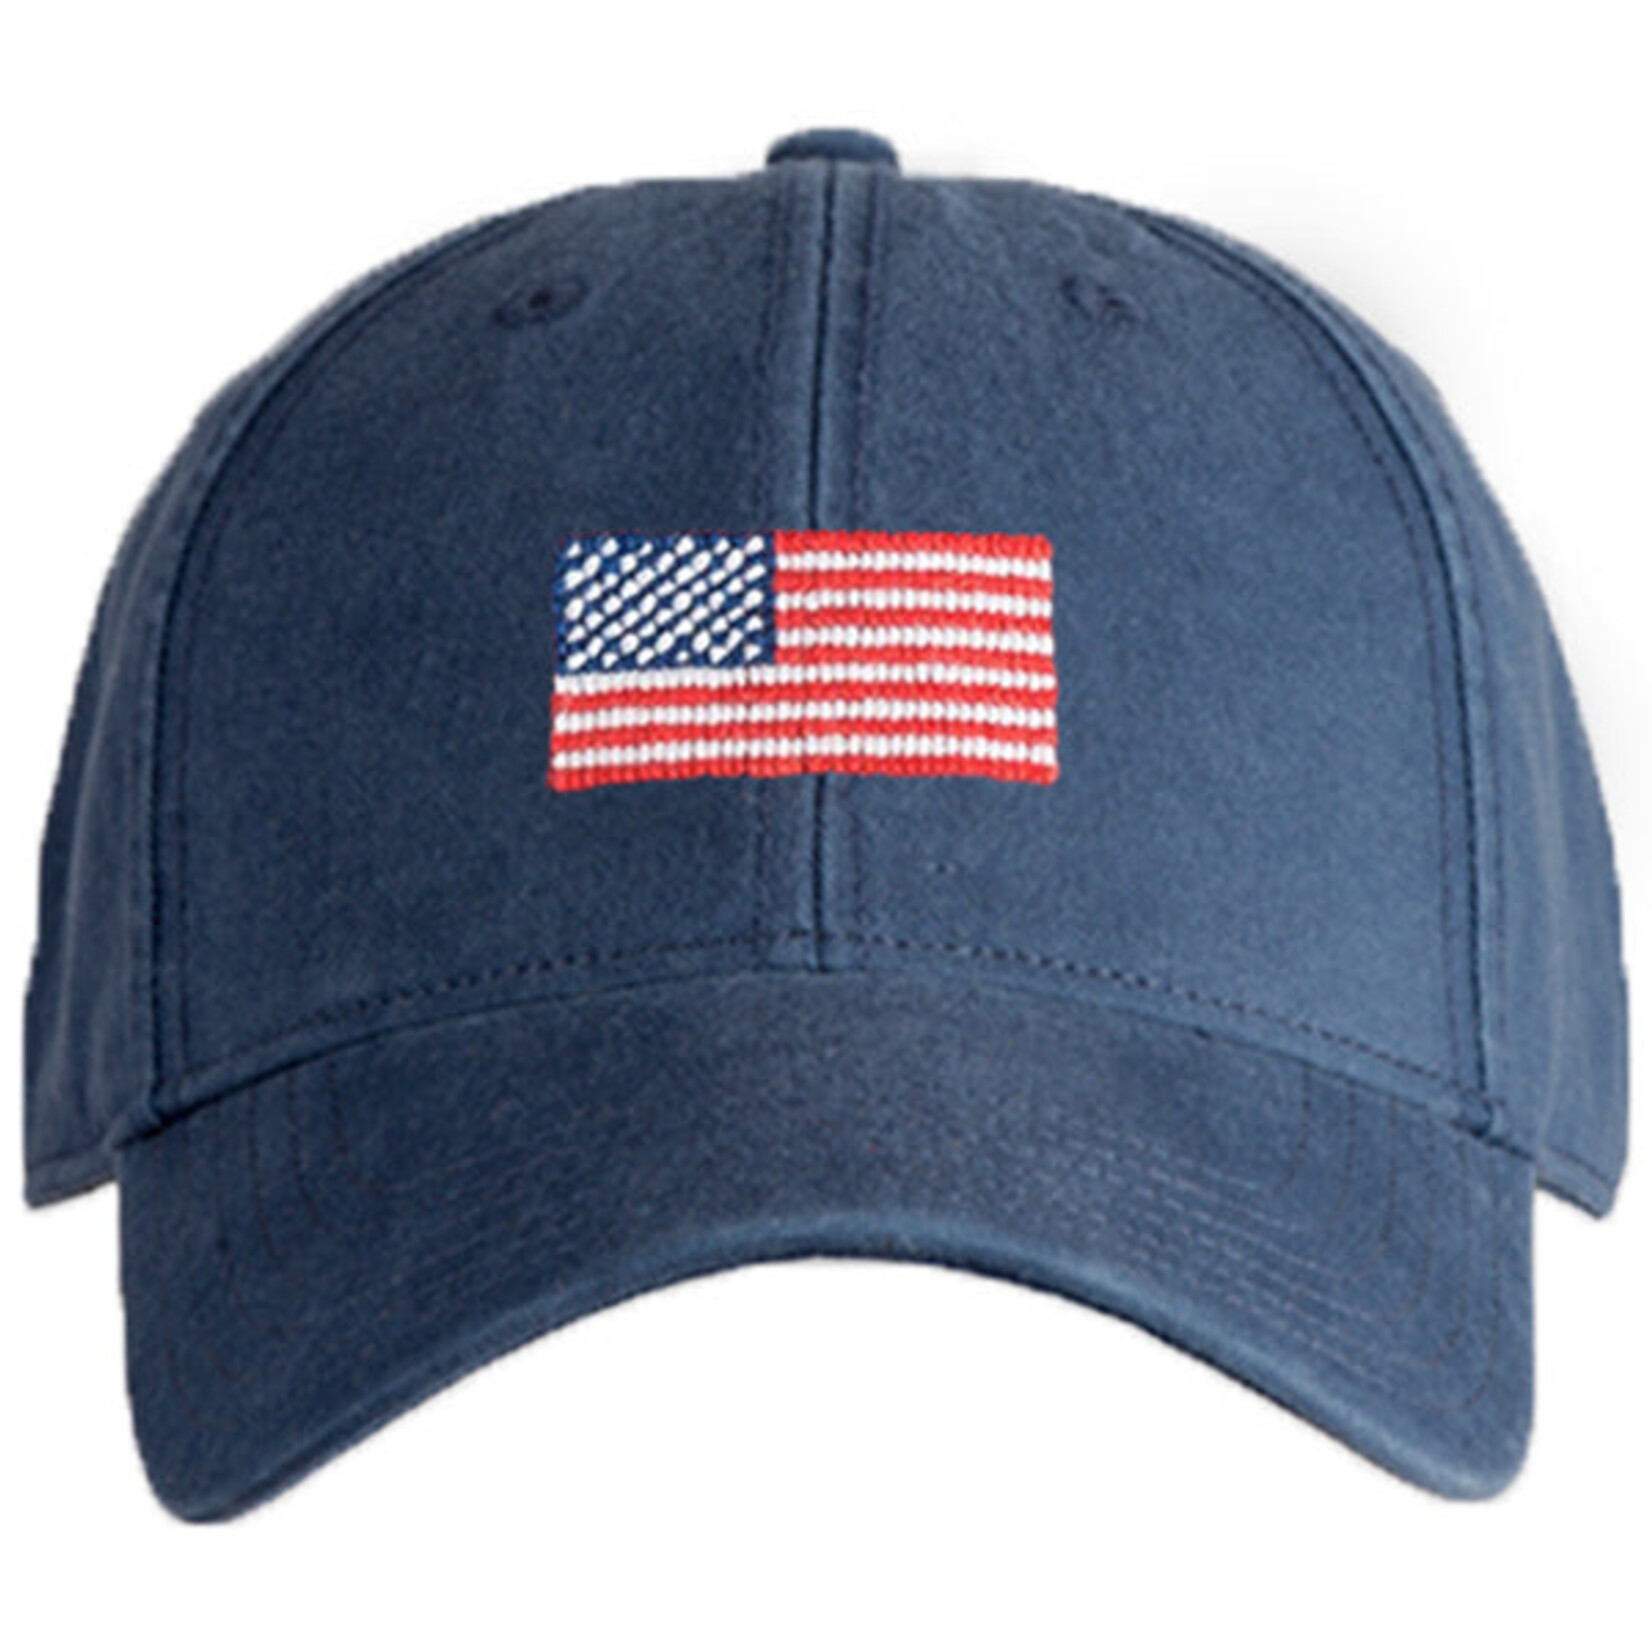 Harding Lane Harding Lane - Navy Adult Hat - American Flag